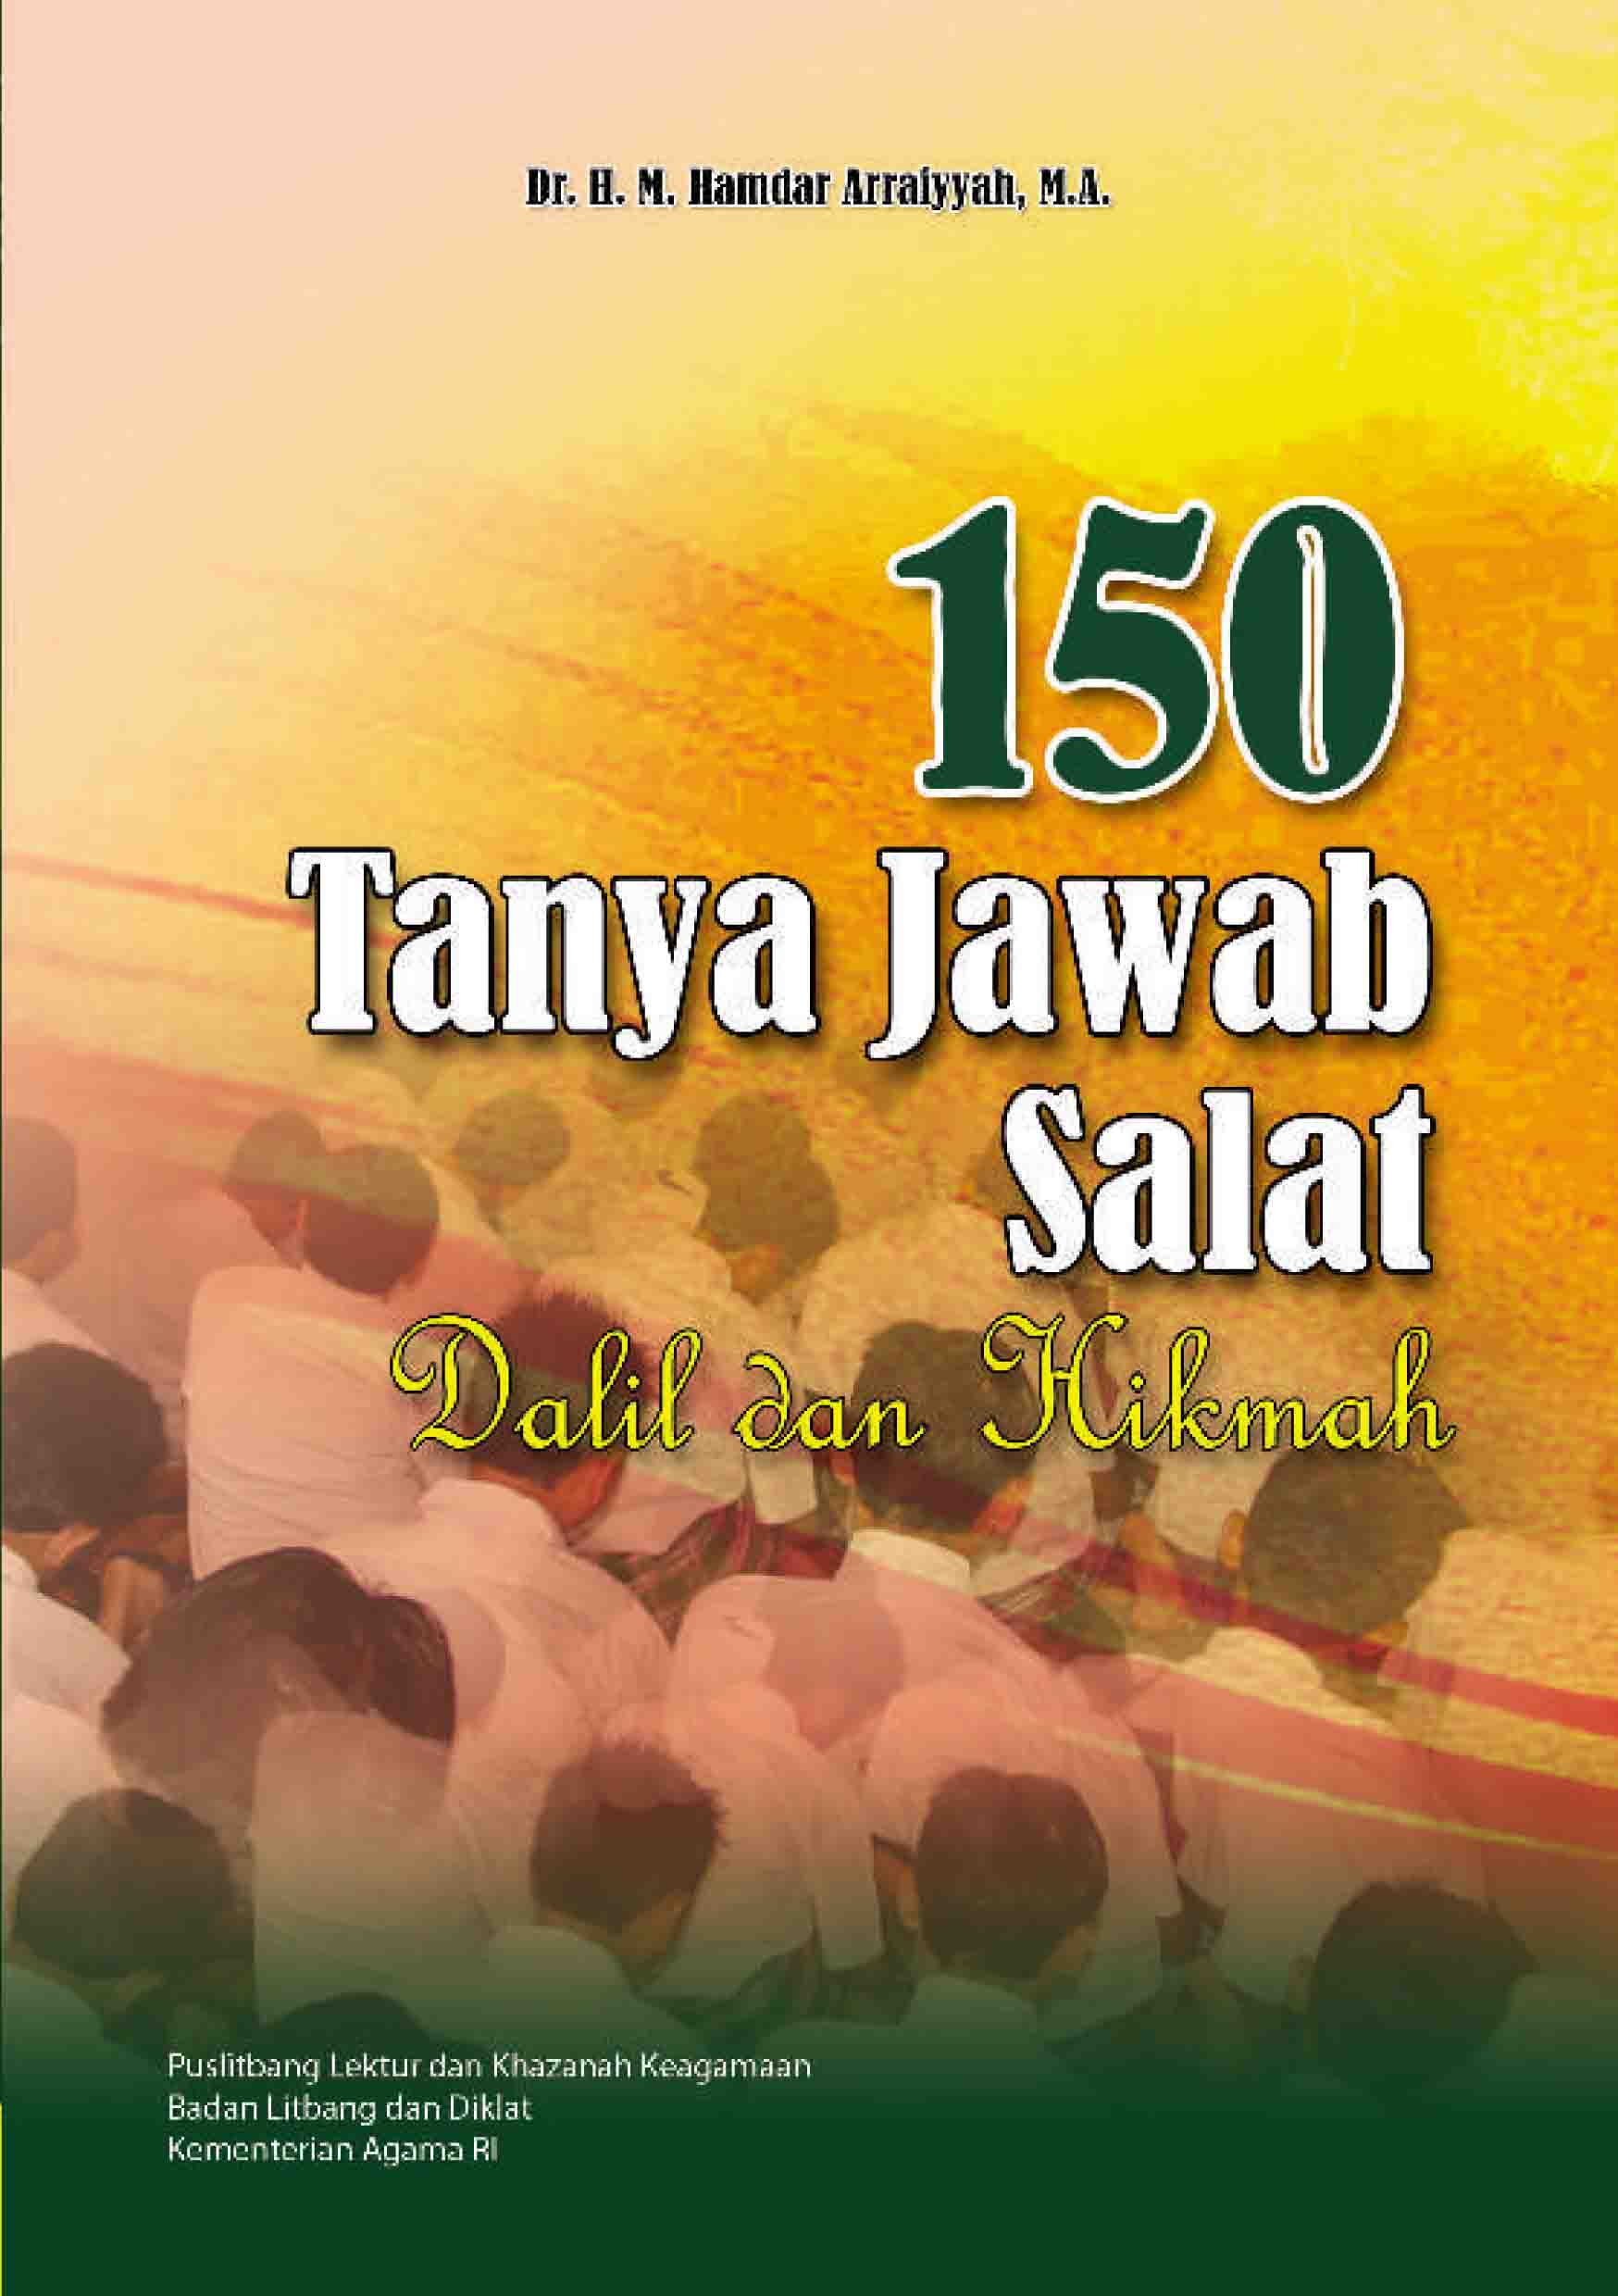 150 Tanya Jawab Salat (Dalil dan Hikmah)